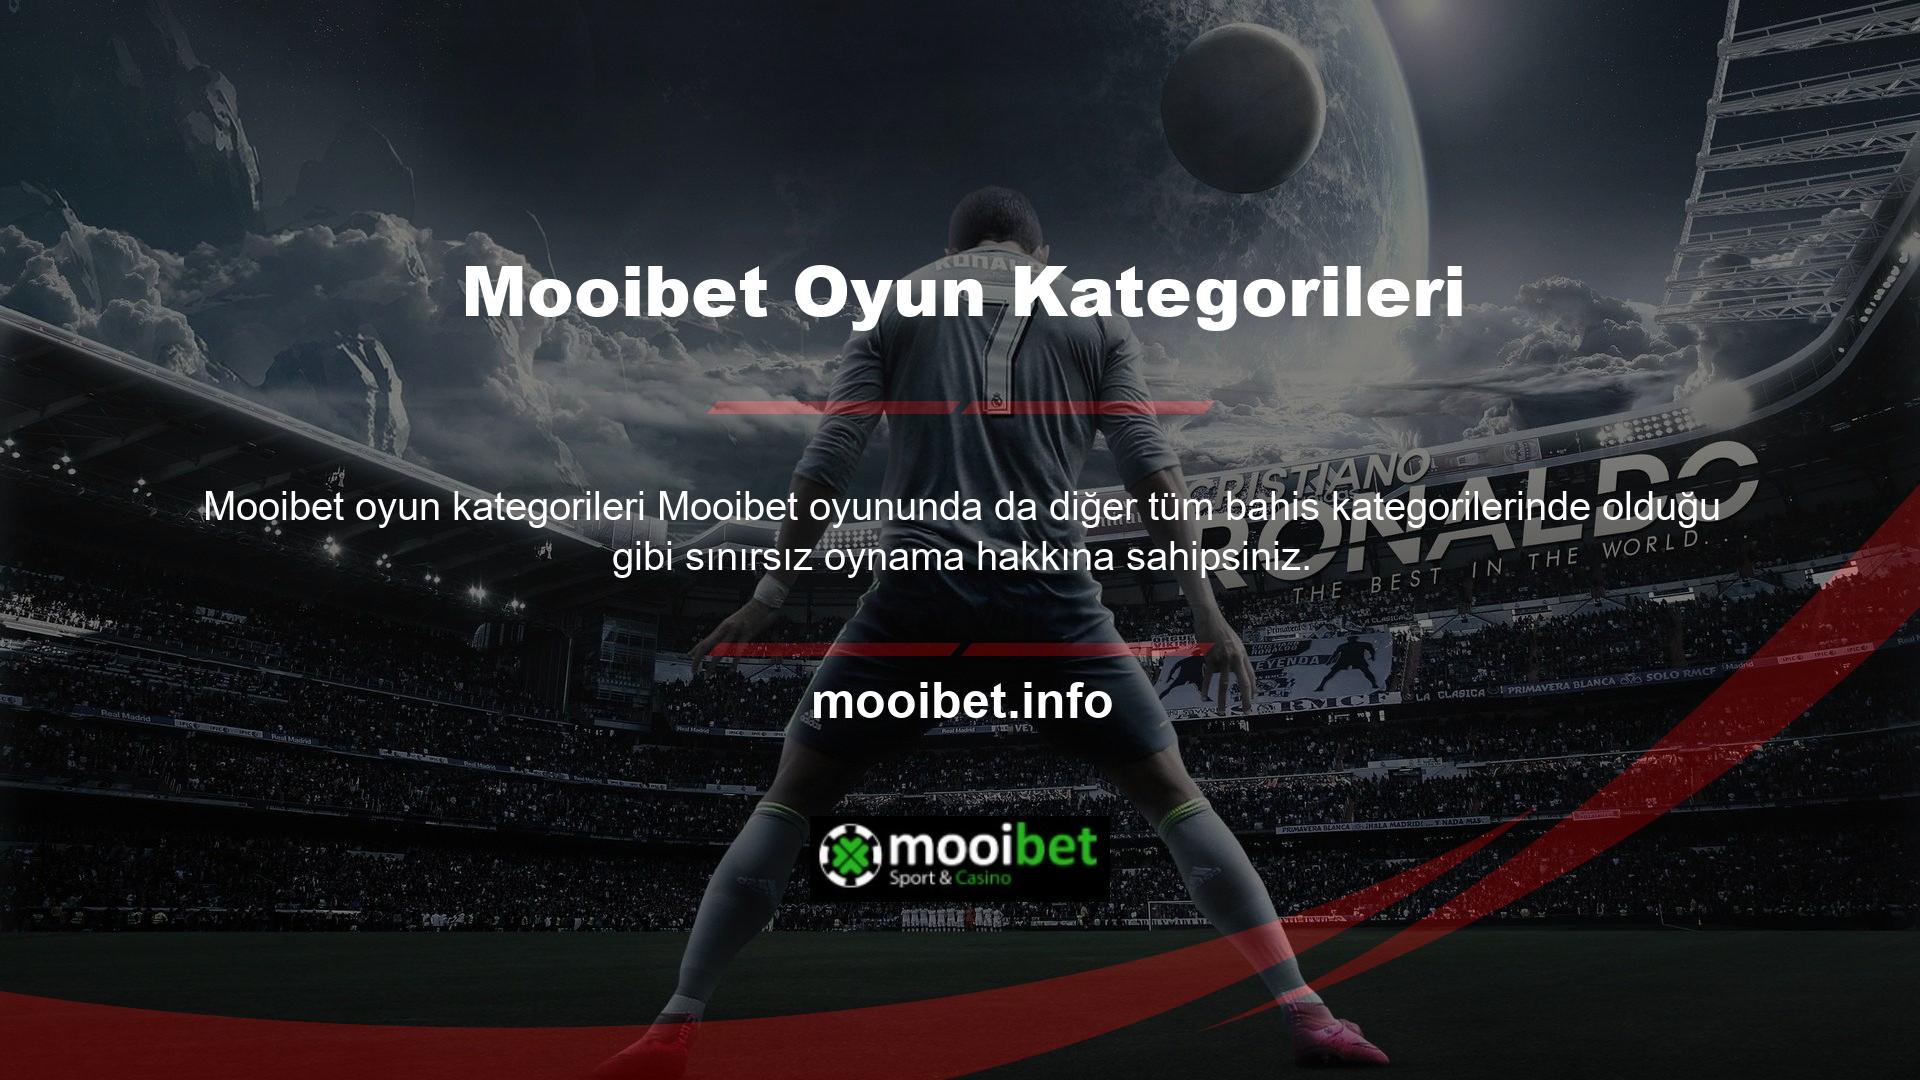 Mooibet Gaming, lisanslama ve oyun hizmetleri için tercih edilen bir sitedir